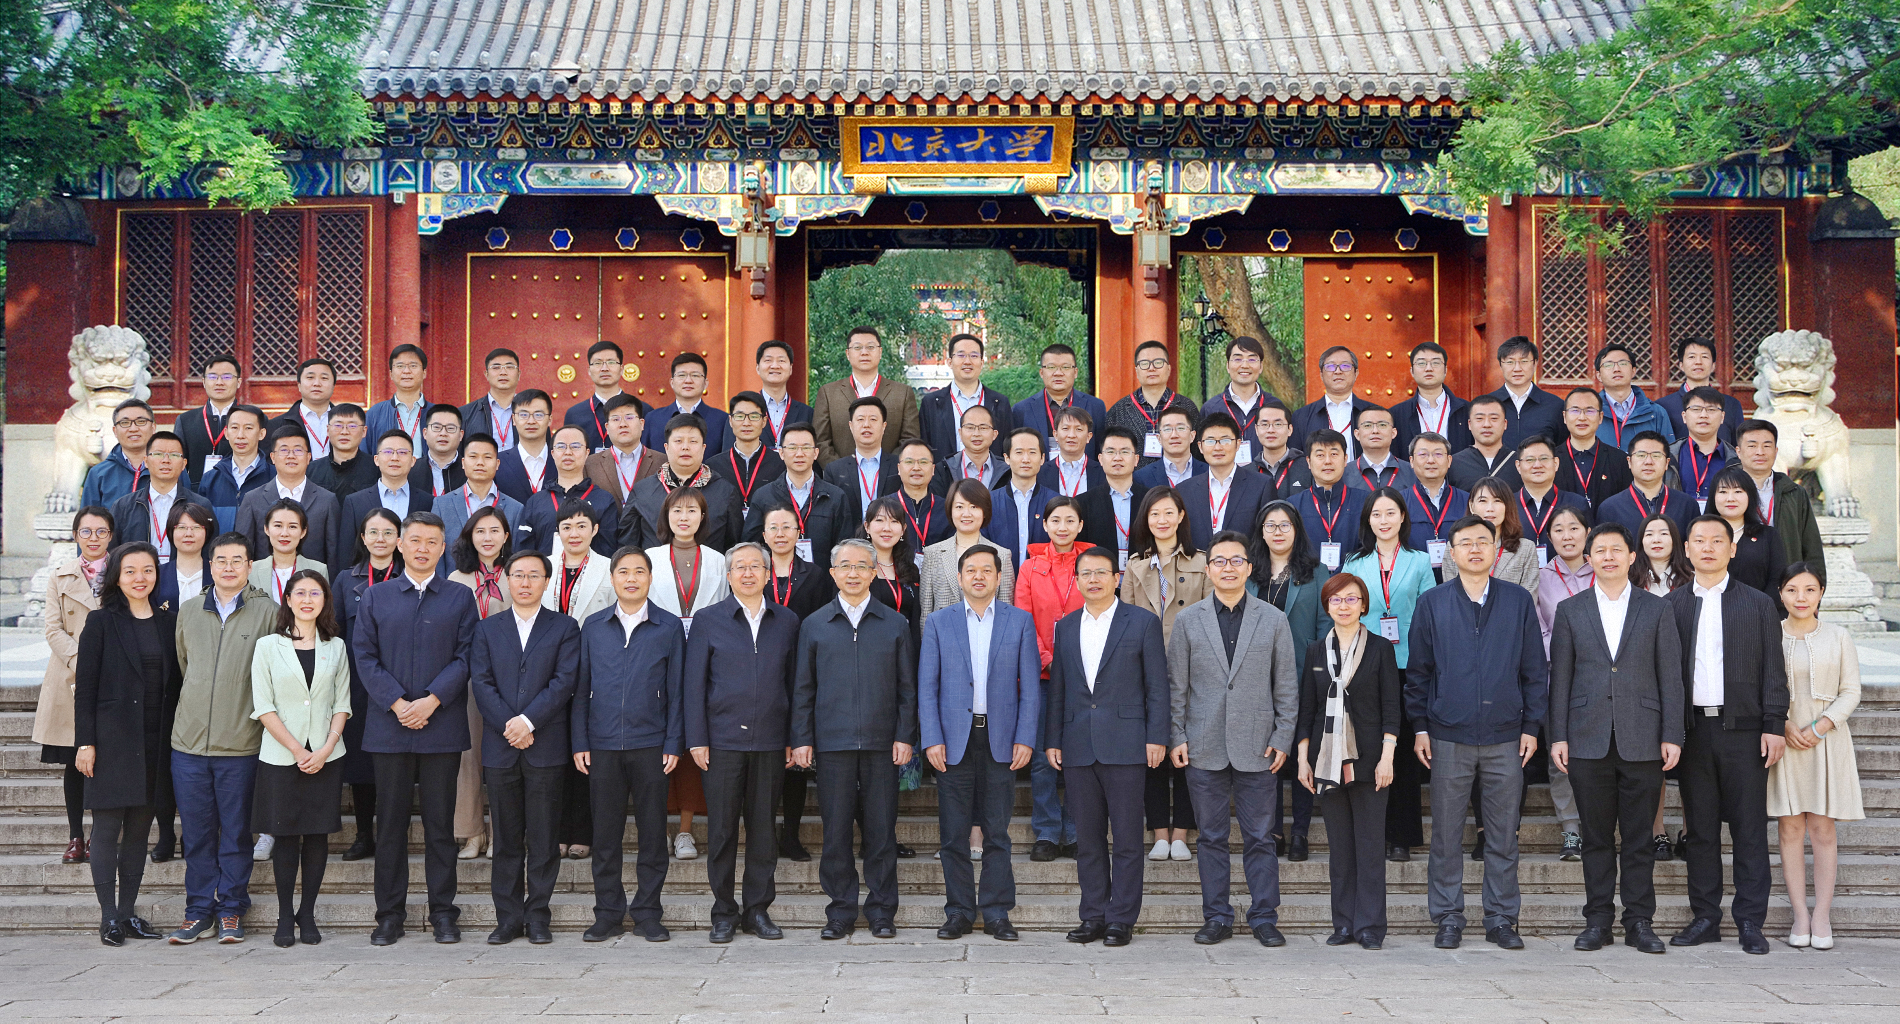 北京市国家治理青年人才培养计划第五期结业式暨第六期开班式成功举办